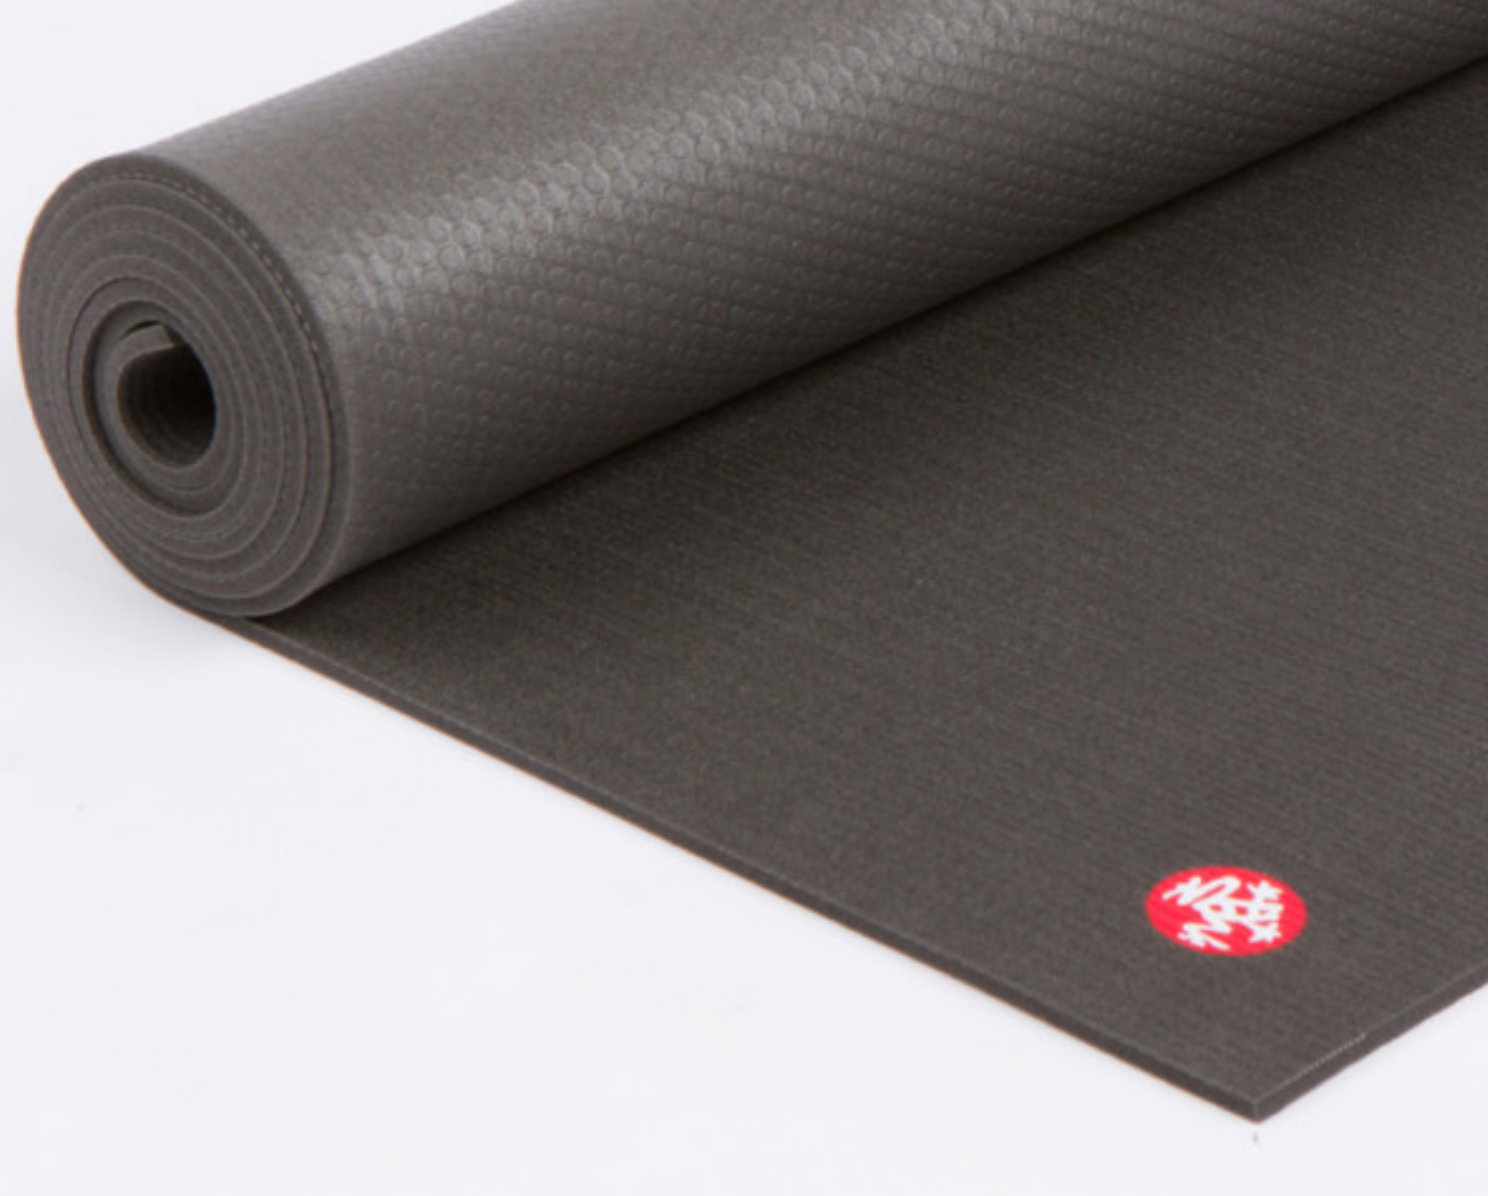 where do you buy yoga mats